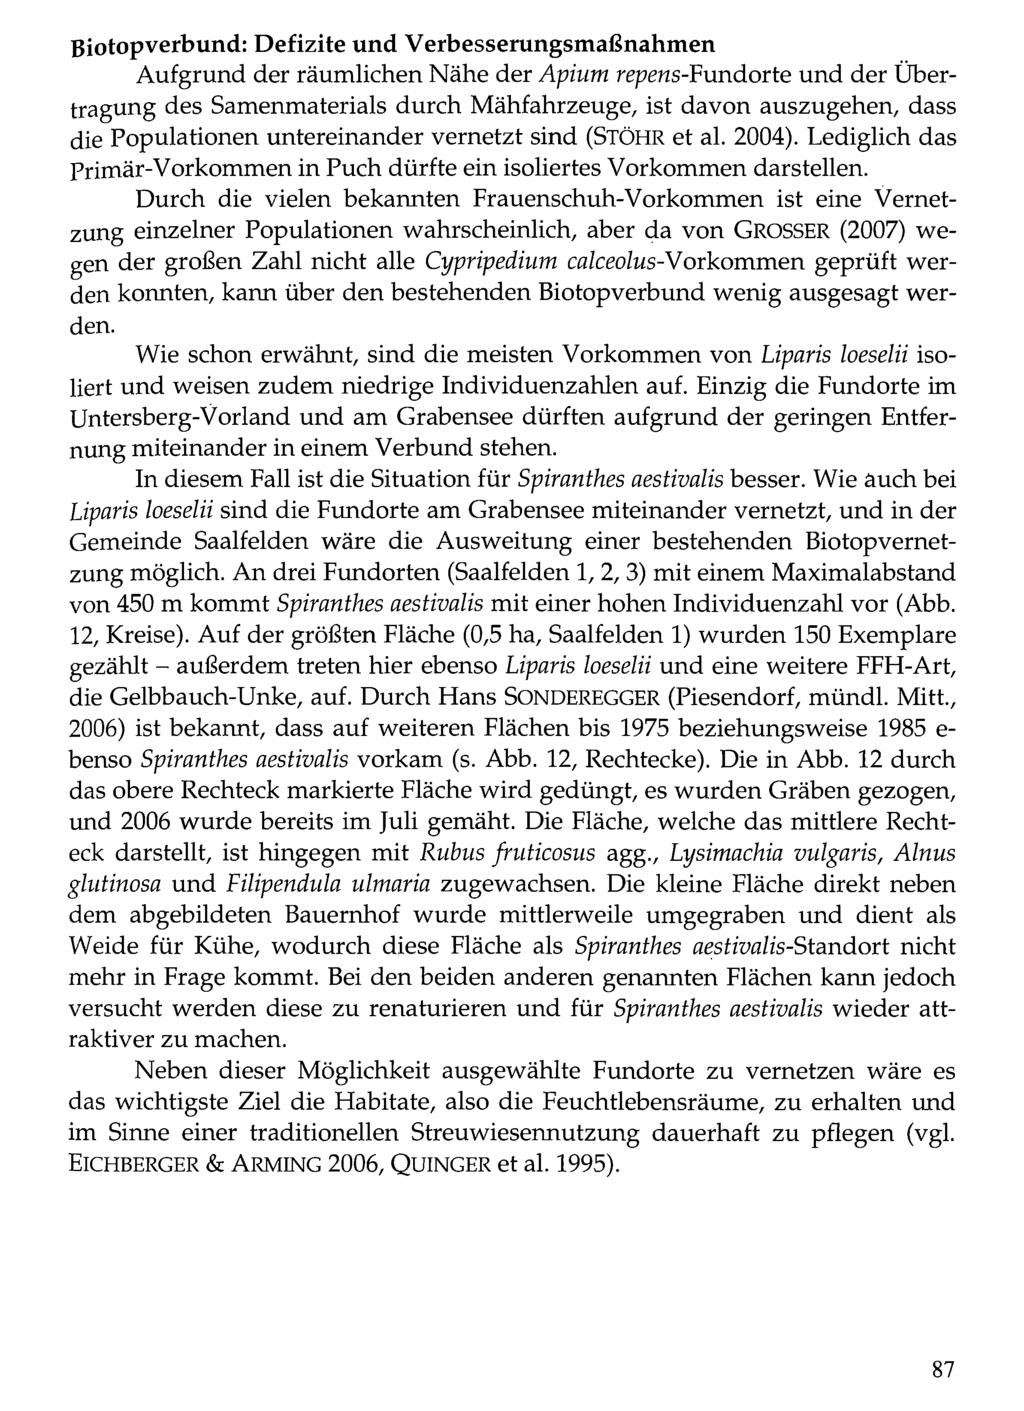 B io to p v e r b u n d : Verlag Defizite Alexander Just: und Dorfbeuern Verbesserungsmaßnahmen - Salzburg - Brüssel; download unter www.biologiezentrum.